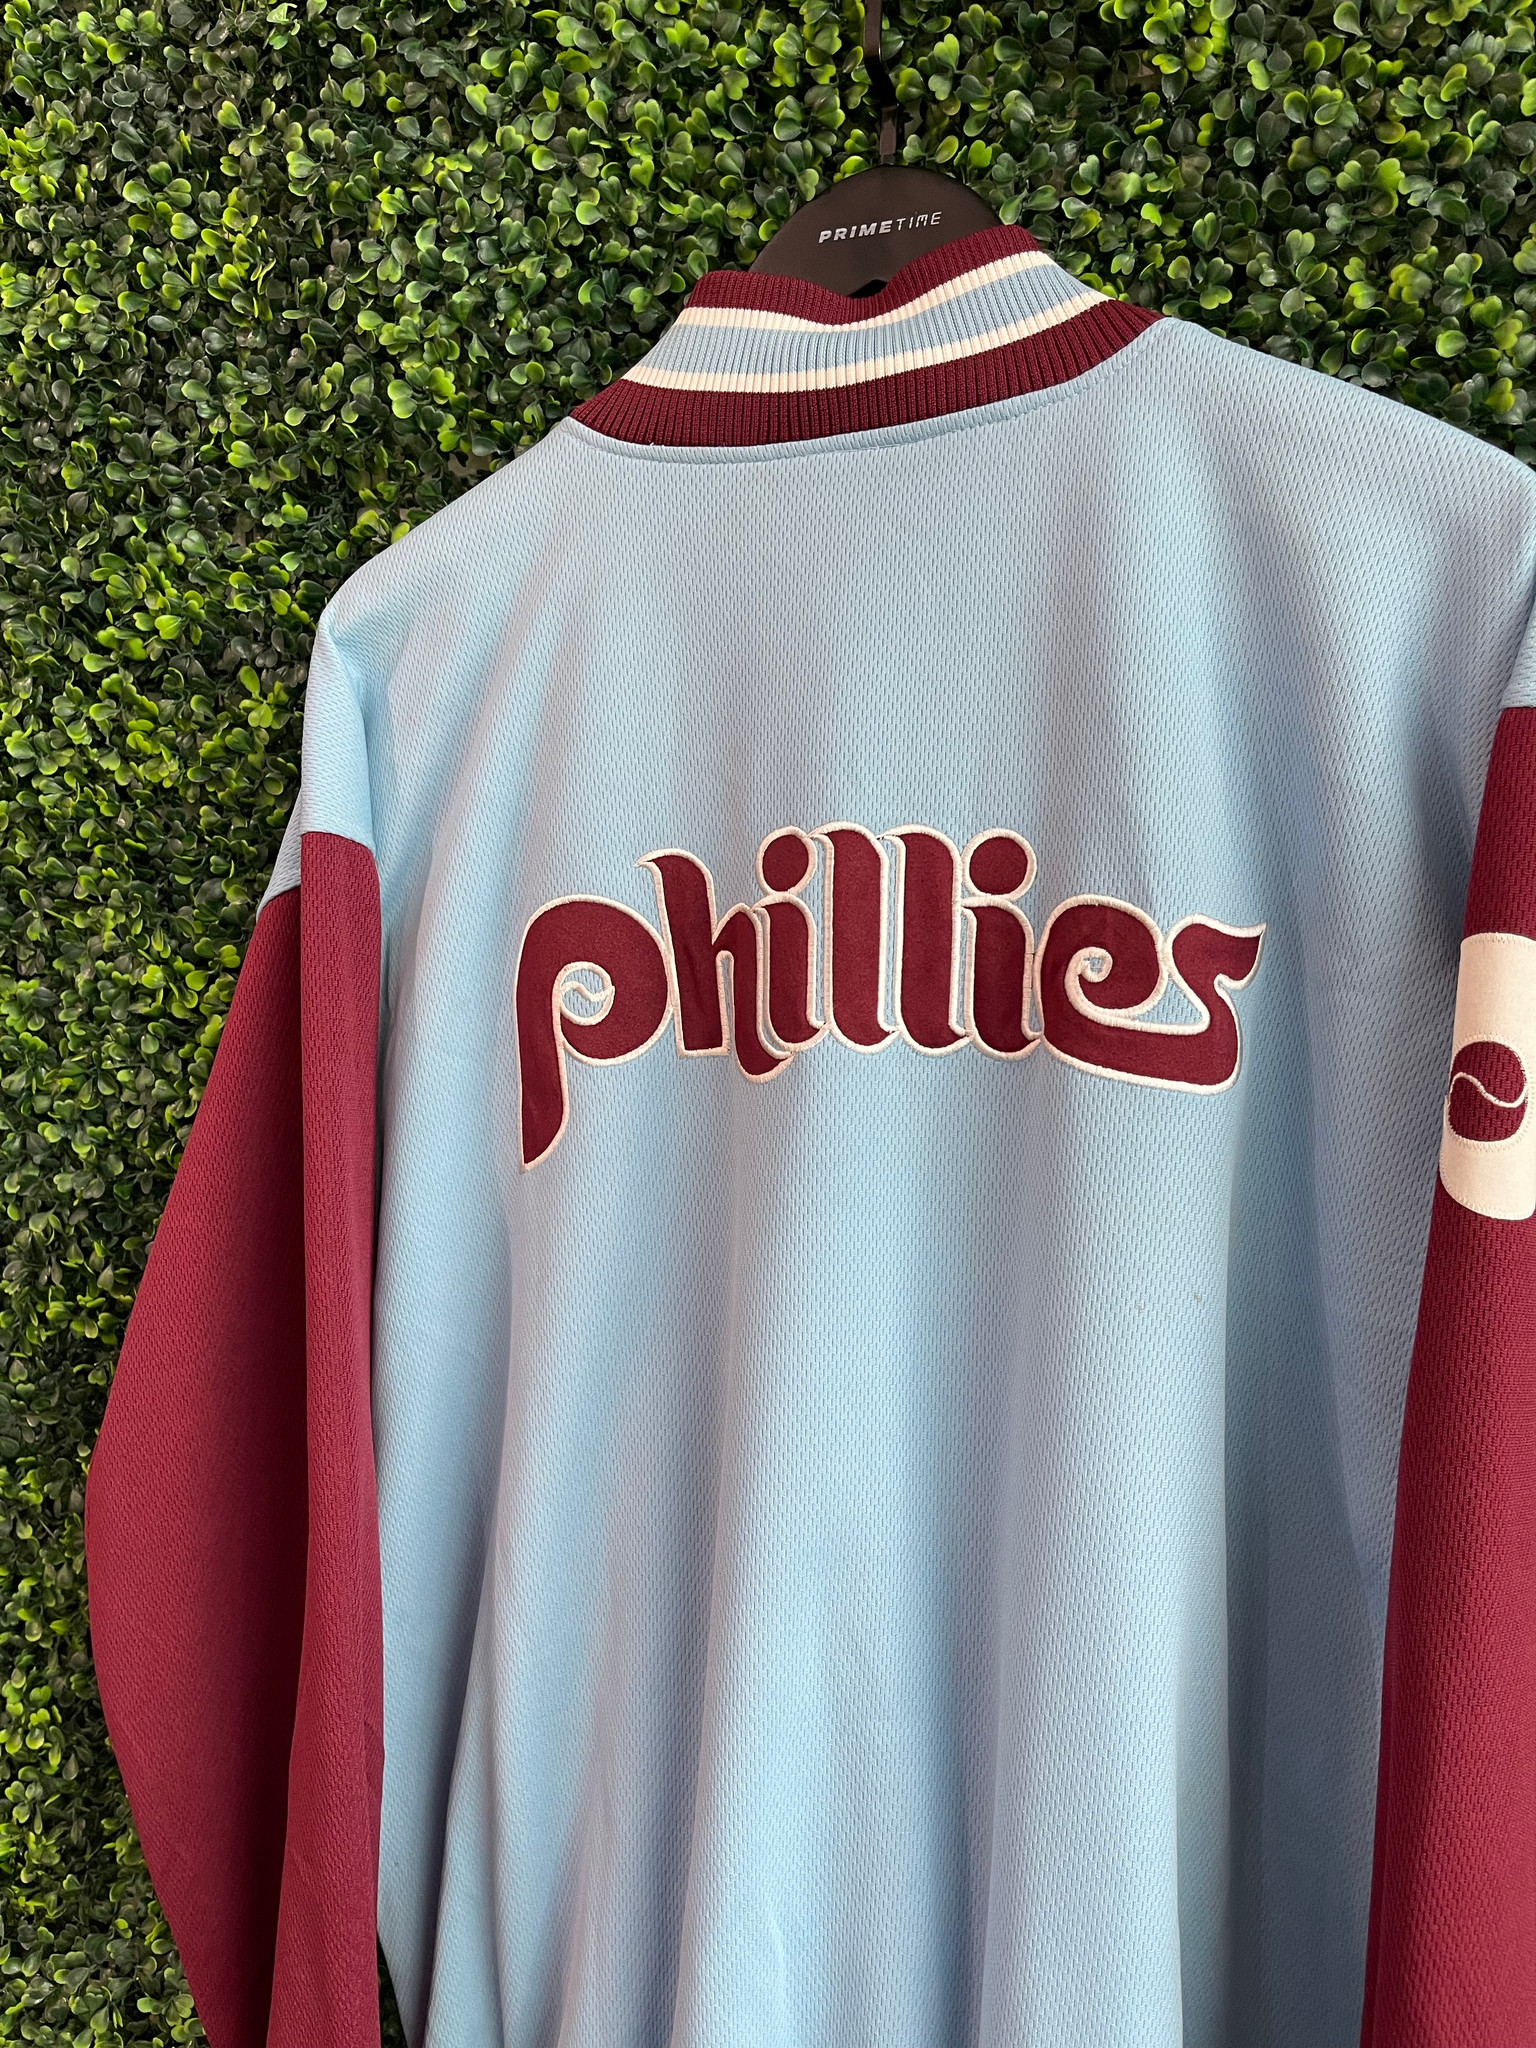 Vtg 90s Philadelphia Phillies Baseball Jacket XL Cooperstown